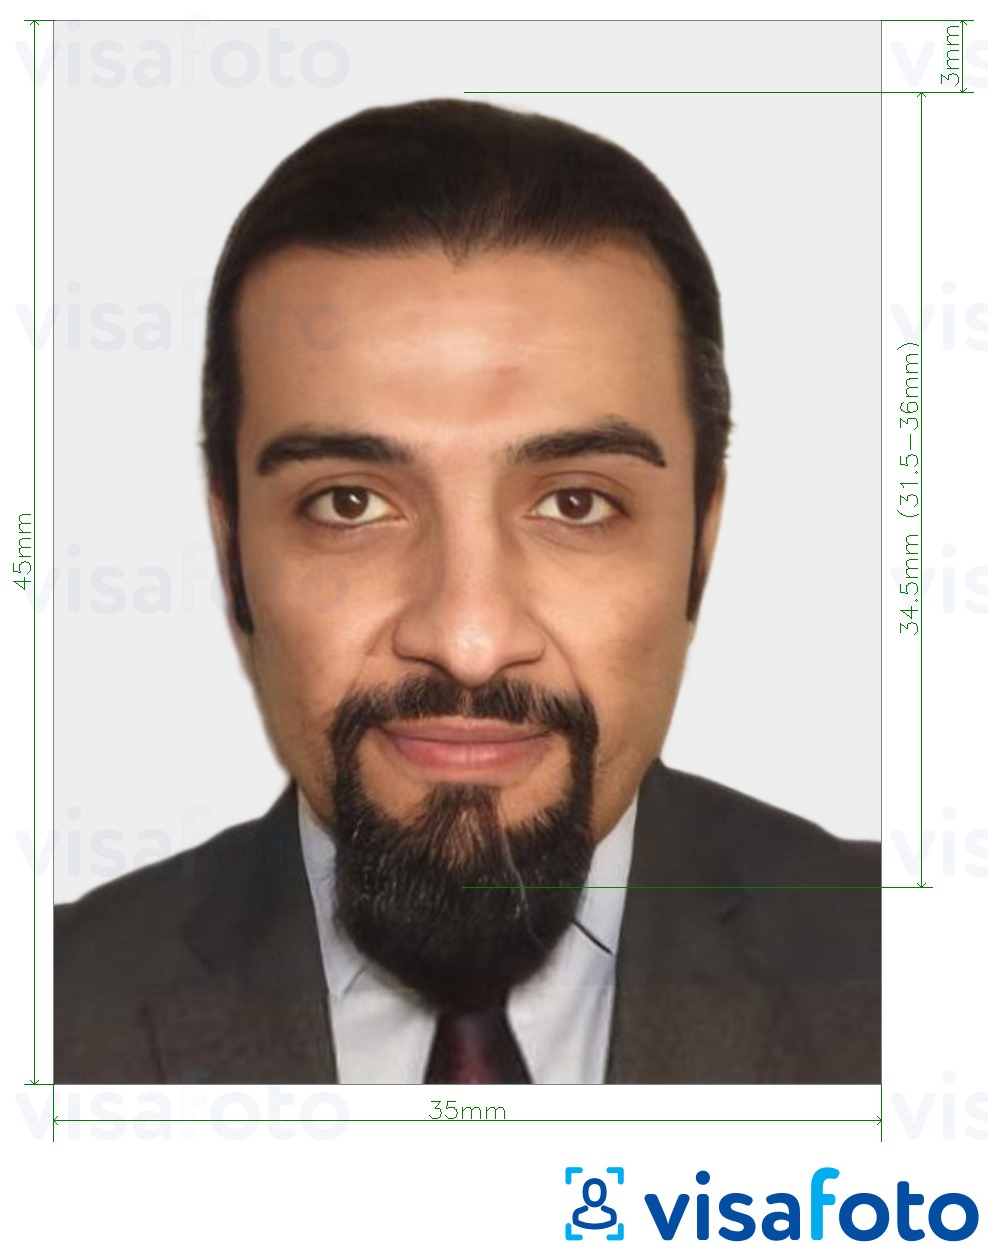 Мавритания ID картасы 35x45 мм (3,5x4,5 см) үшін нақты мөлшер өлшемі бар фото үлгісі